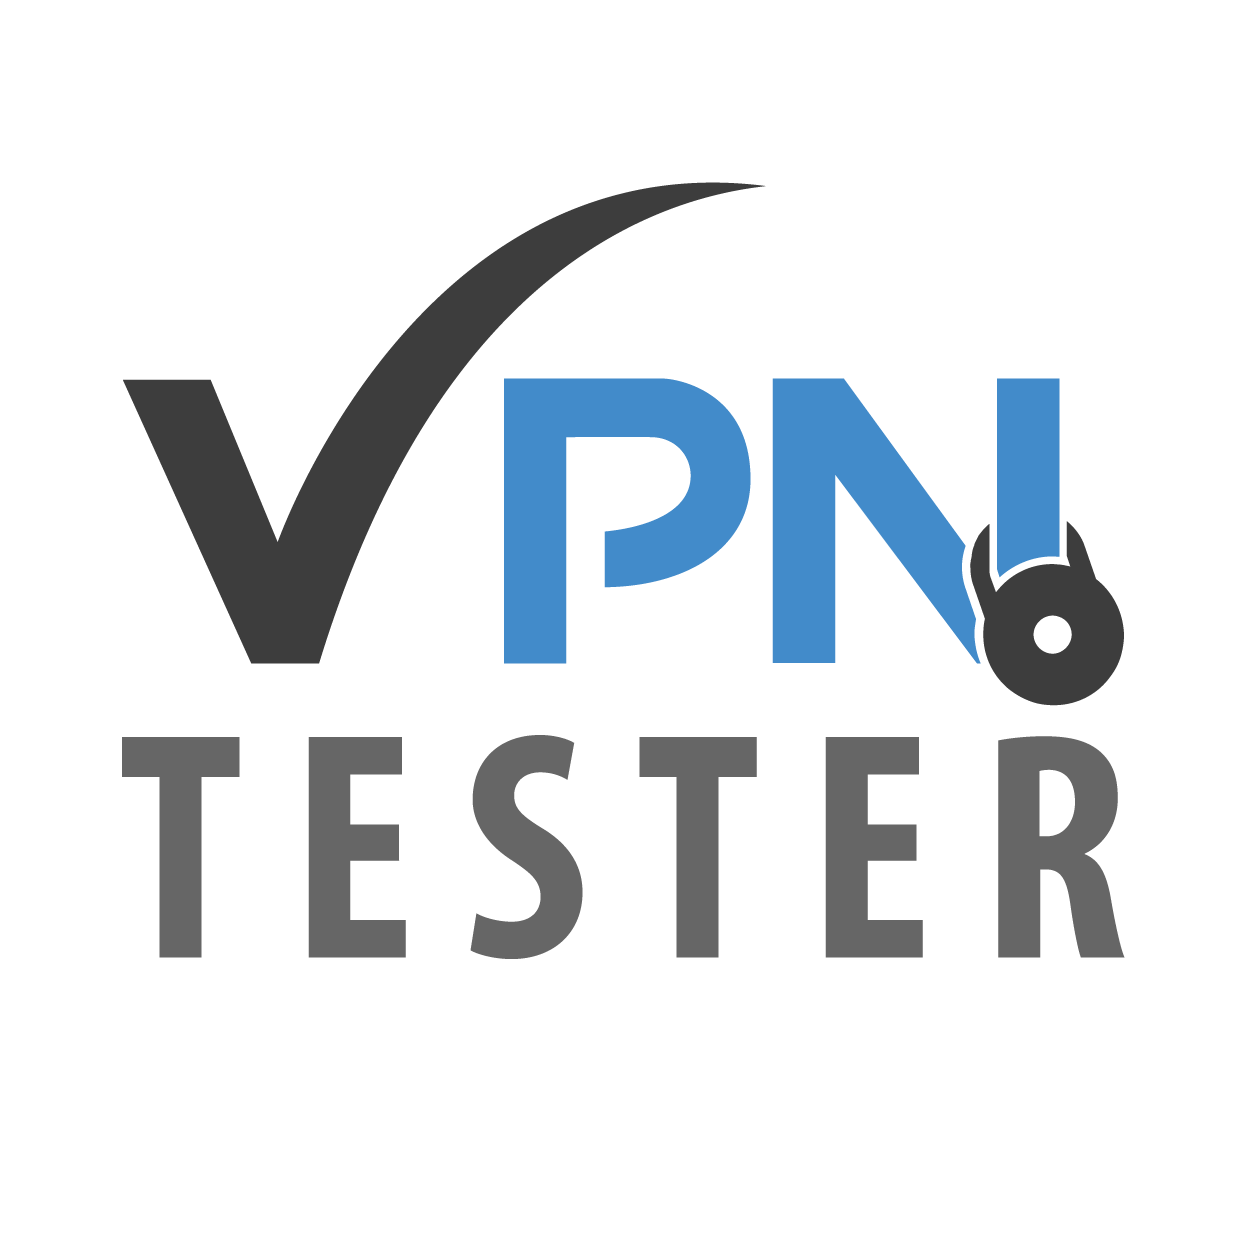 OVPN - Der schnellste VPN aus allen Tests 1